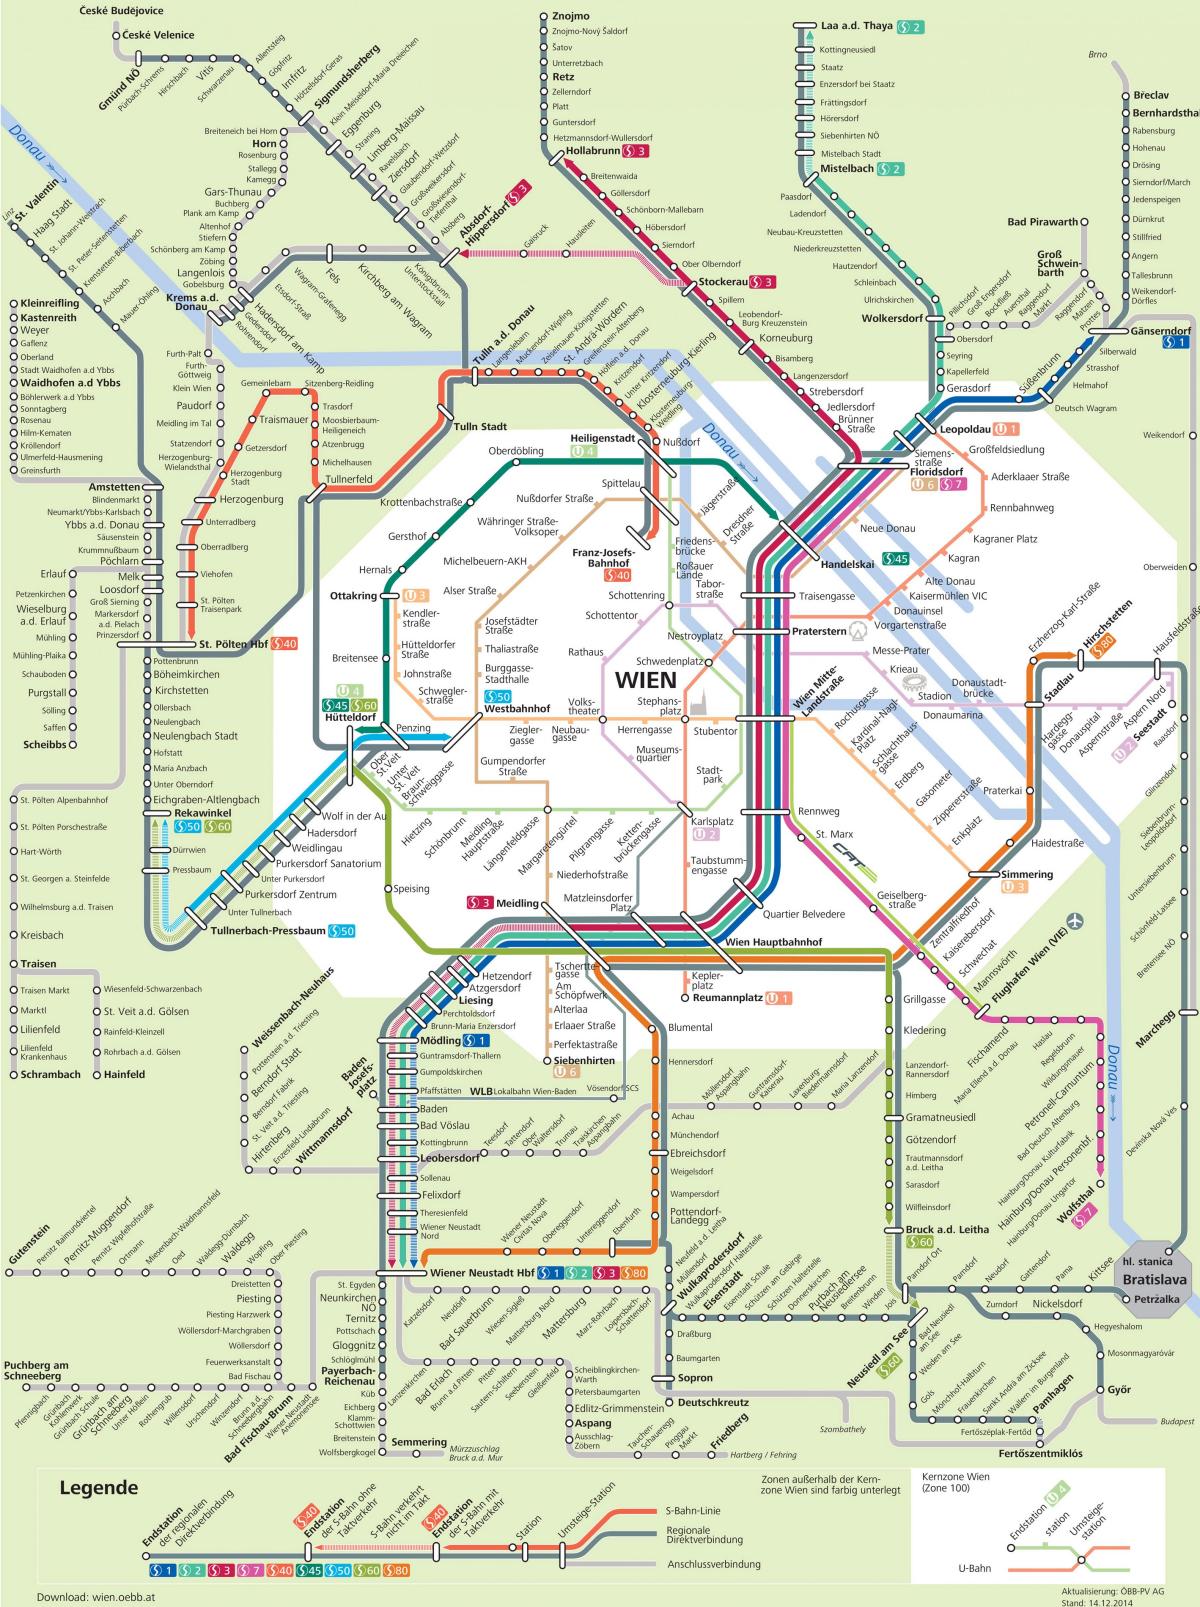 ვენის ქალაქის სატრანსპორტო რუკა